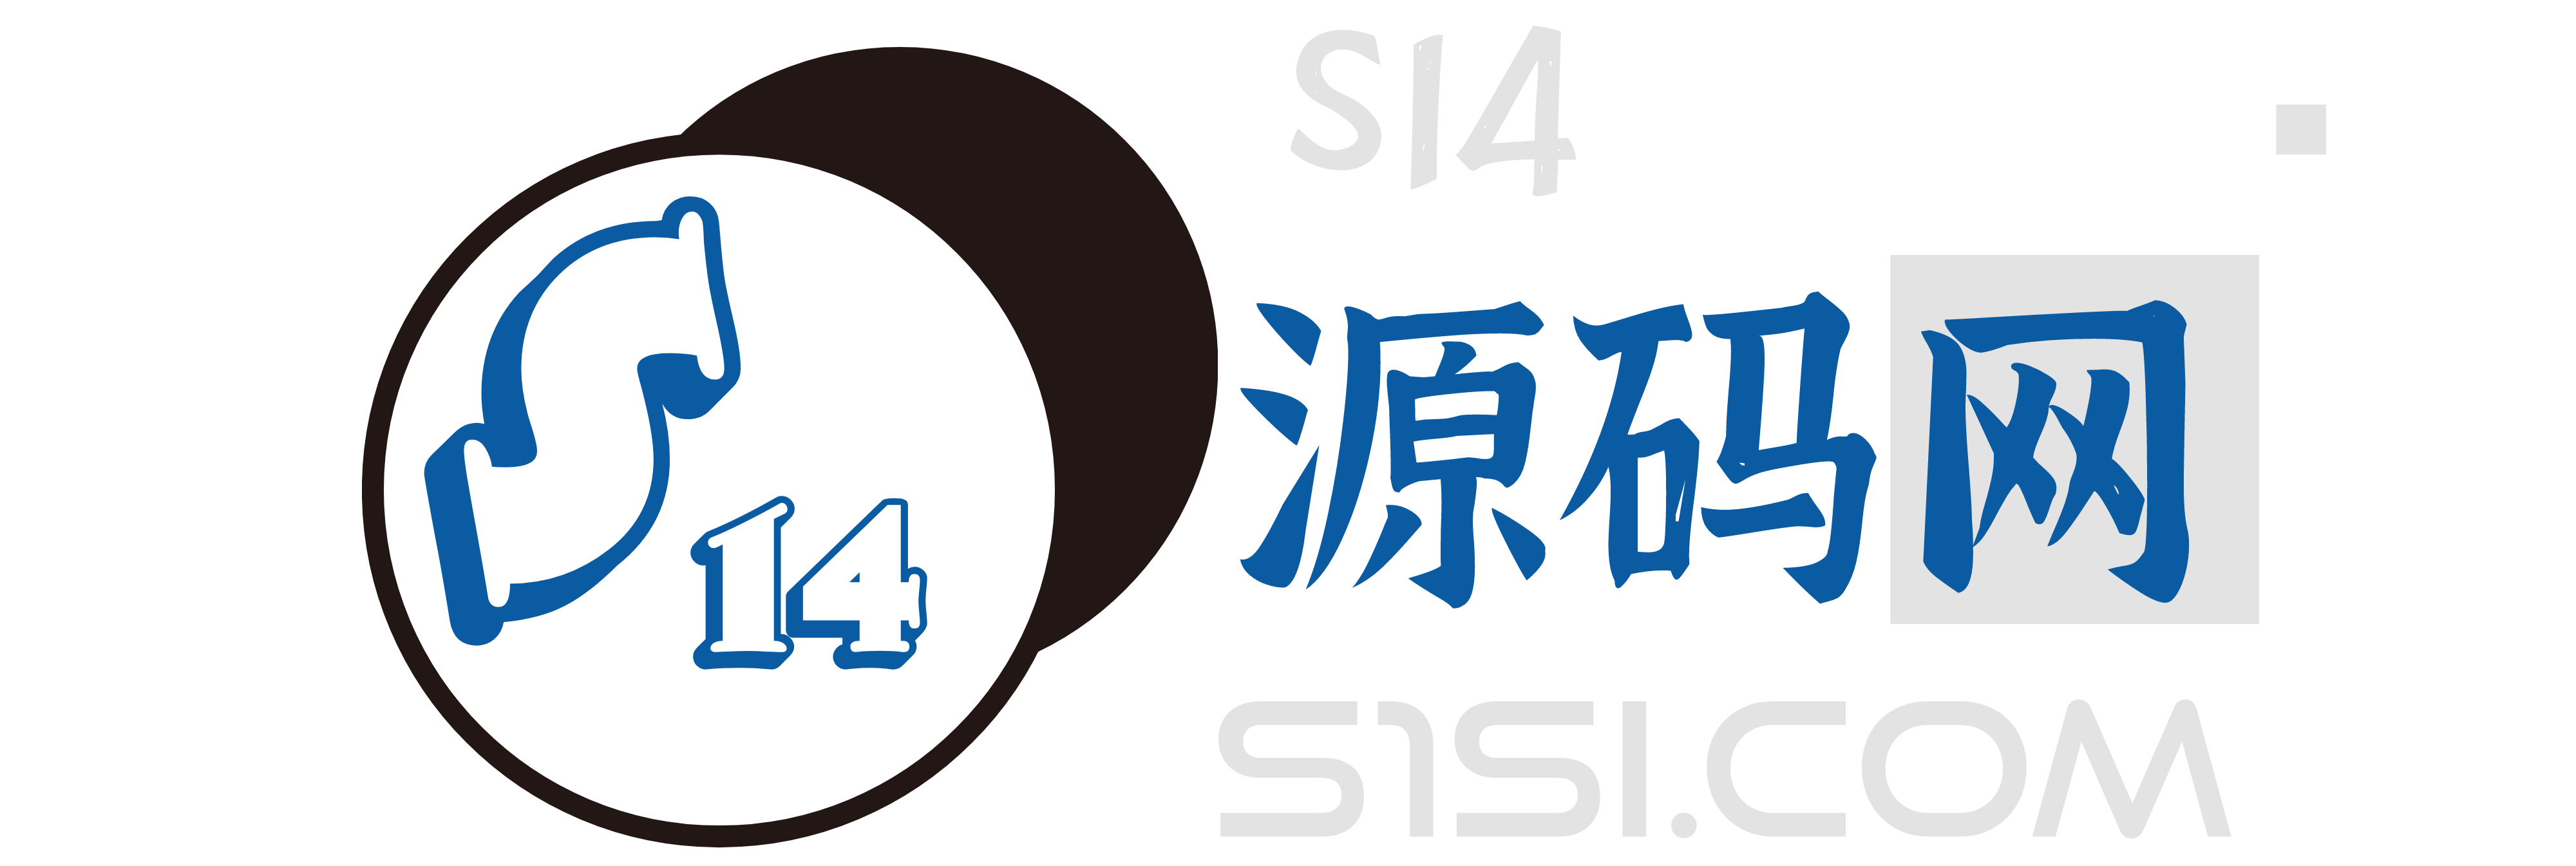 S14资源网-免费源码资源，优质设计素材，实用软件分享网